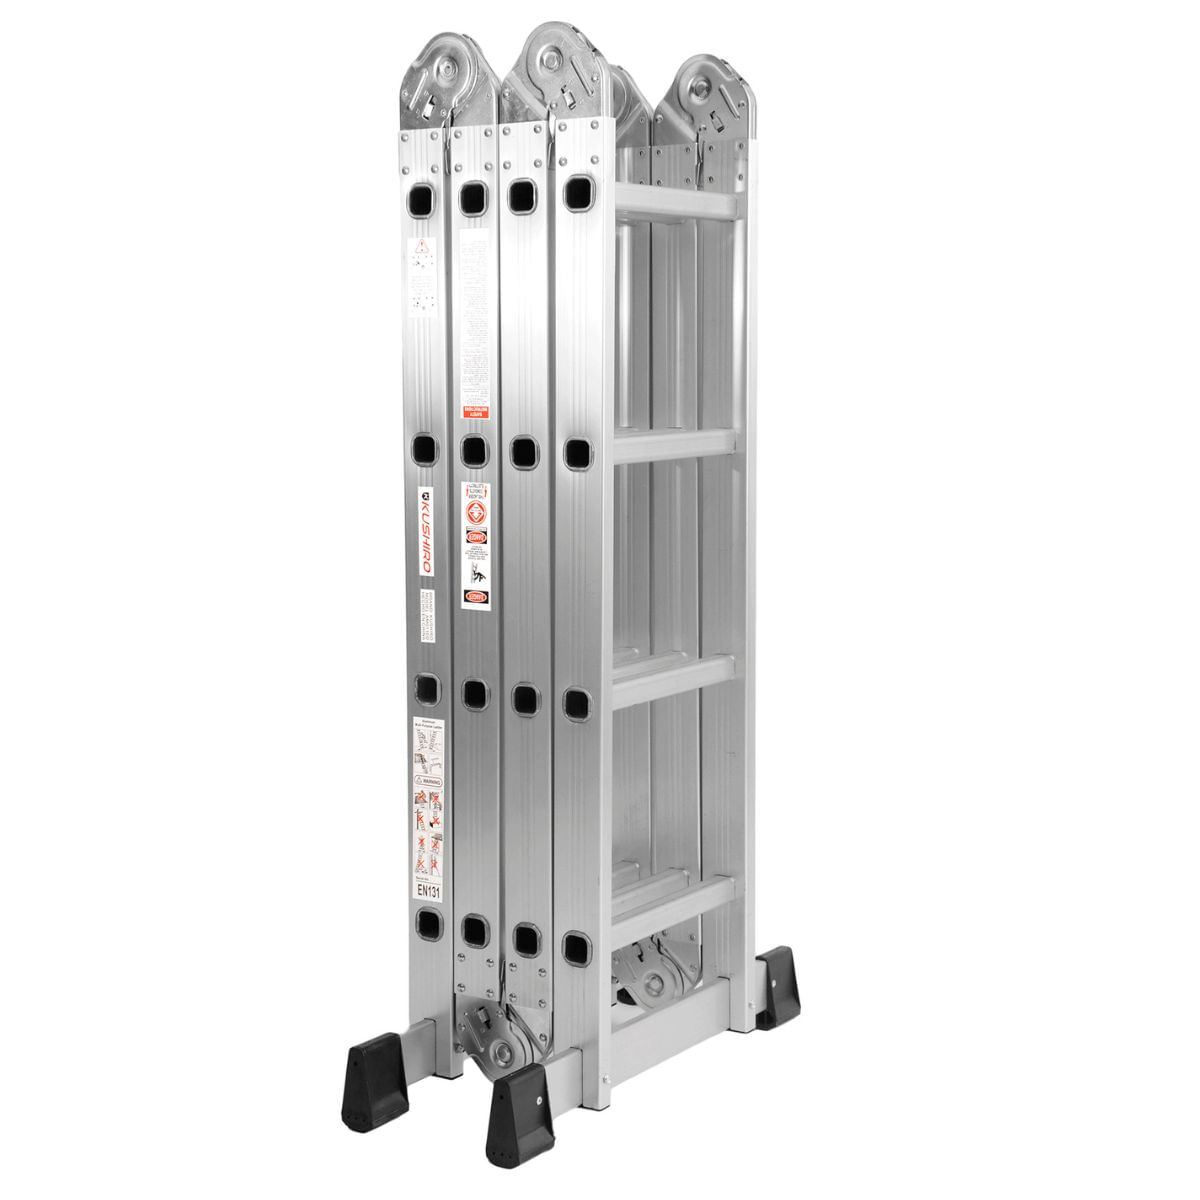 Escalera articulada de aluminio multifunción 4x4 4.7 Mts